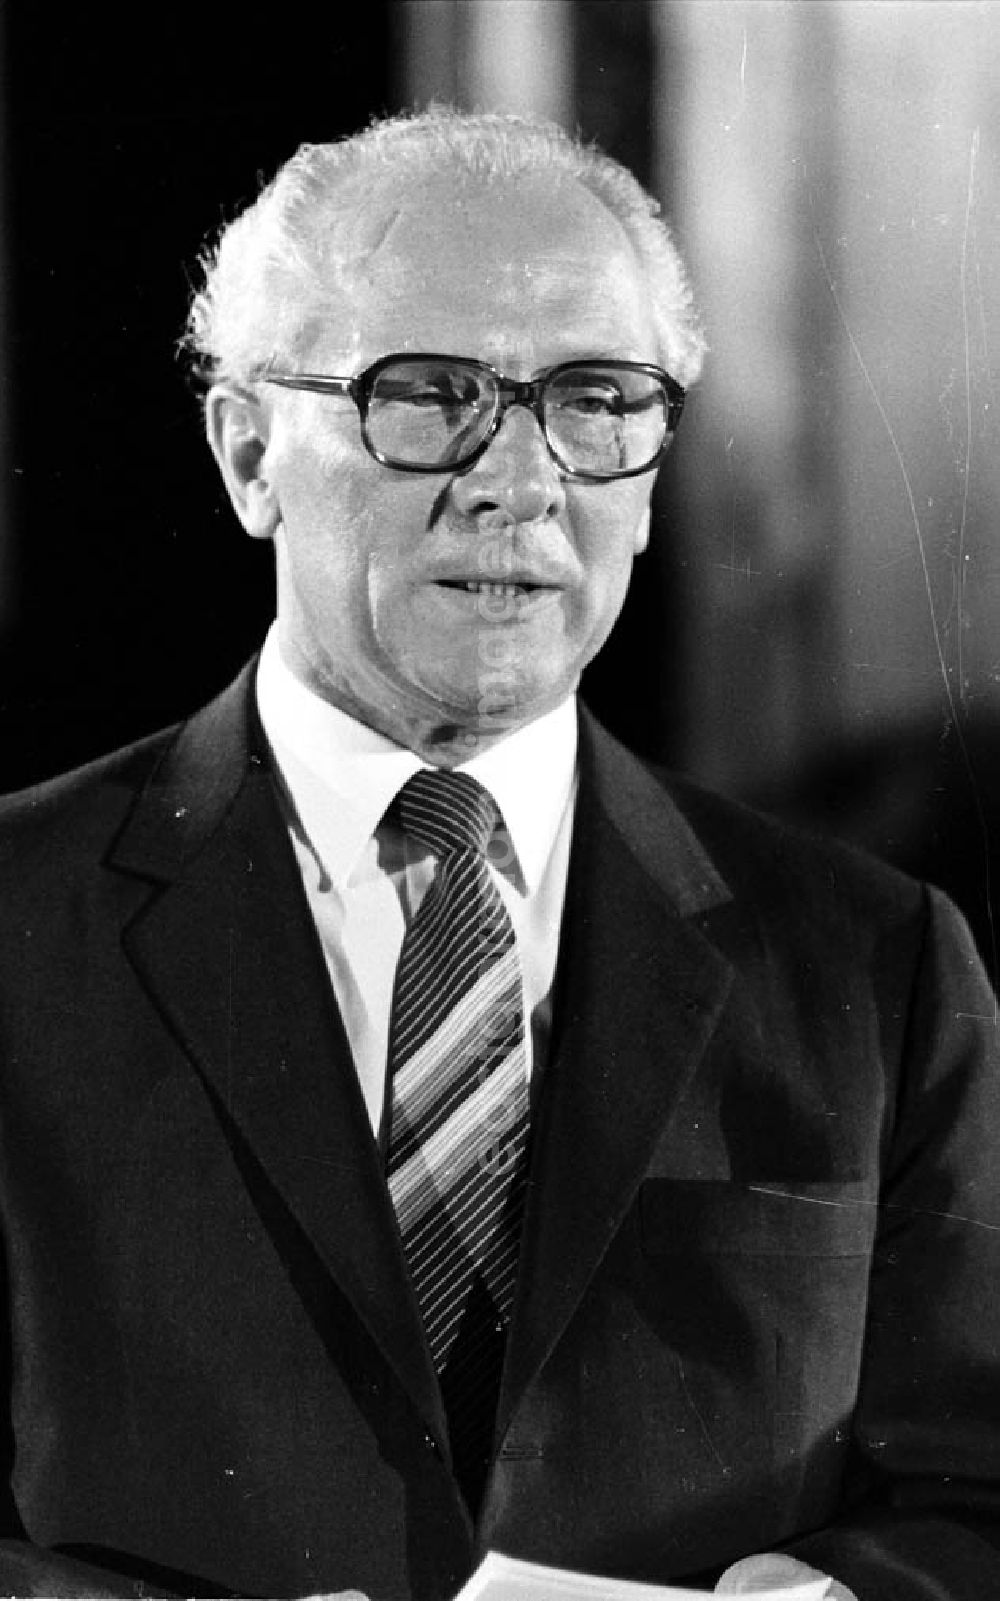 GDR photo archive: Budapest (Ungarn) - Der Partei- und Staatschef der DDR, Erich Honecker, während einer Ansprache anläßlich seines Besuches in Budapest, Ungarn.